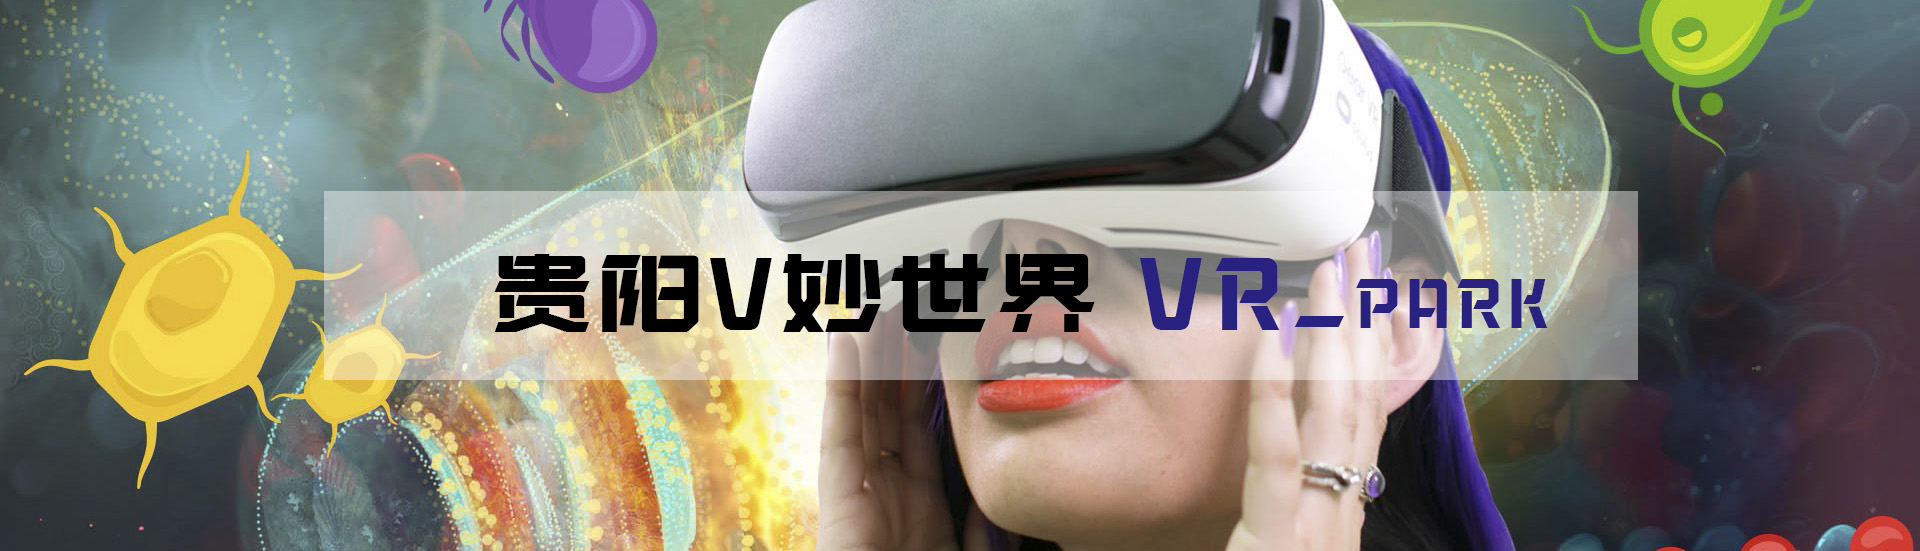 贵阳VR游戏体验店为你分享VR体验体验做一个掏粪男孩